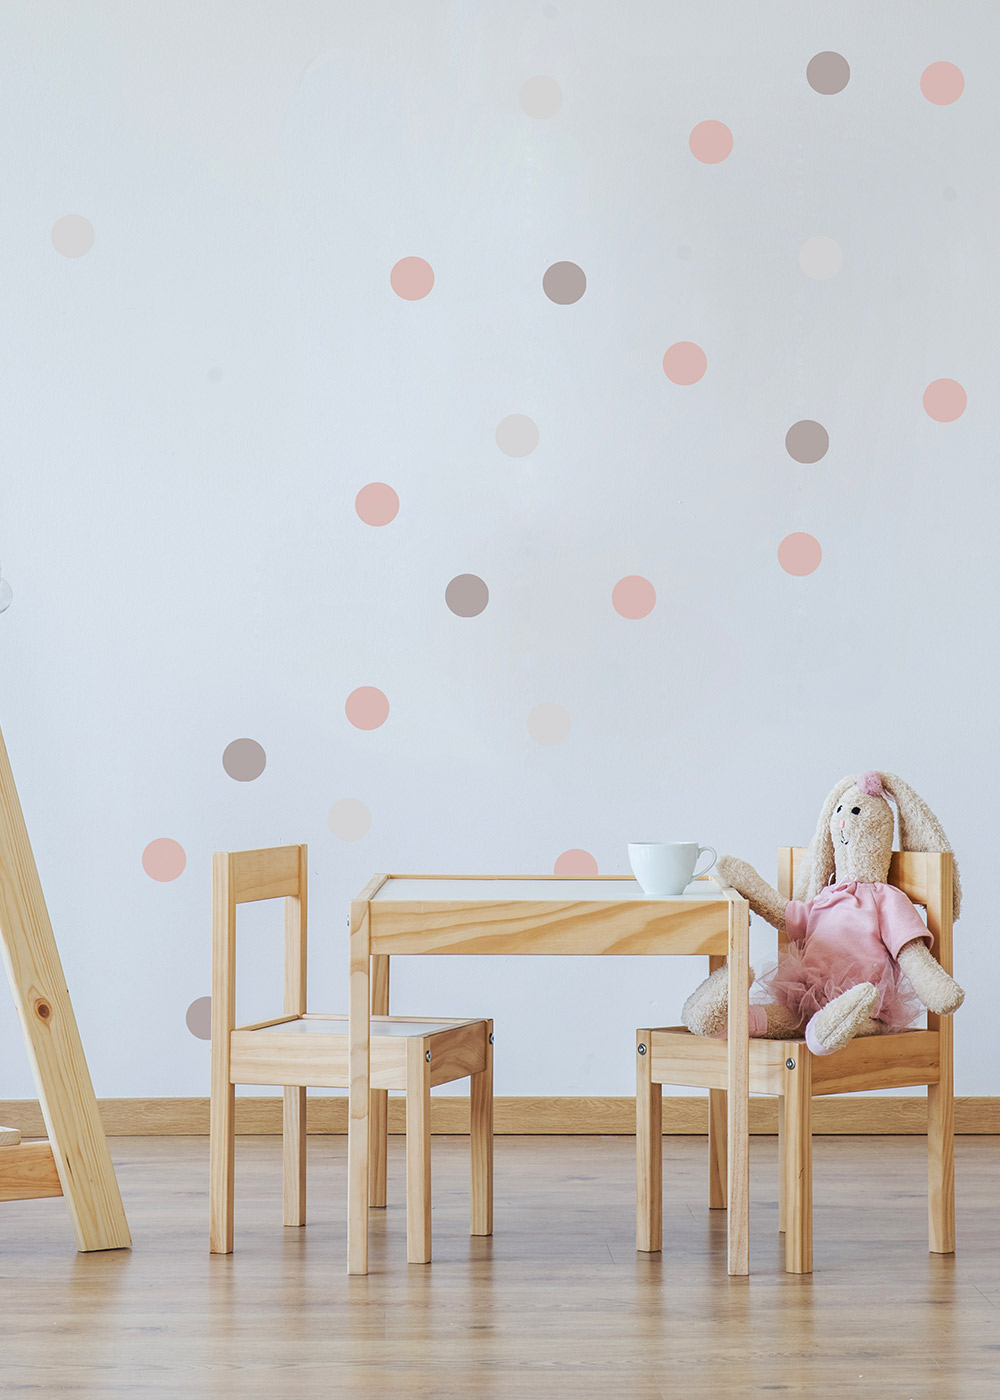 Wandsticker Polka Dots rosa grau Beispiel mit Sitzecke